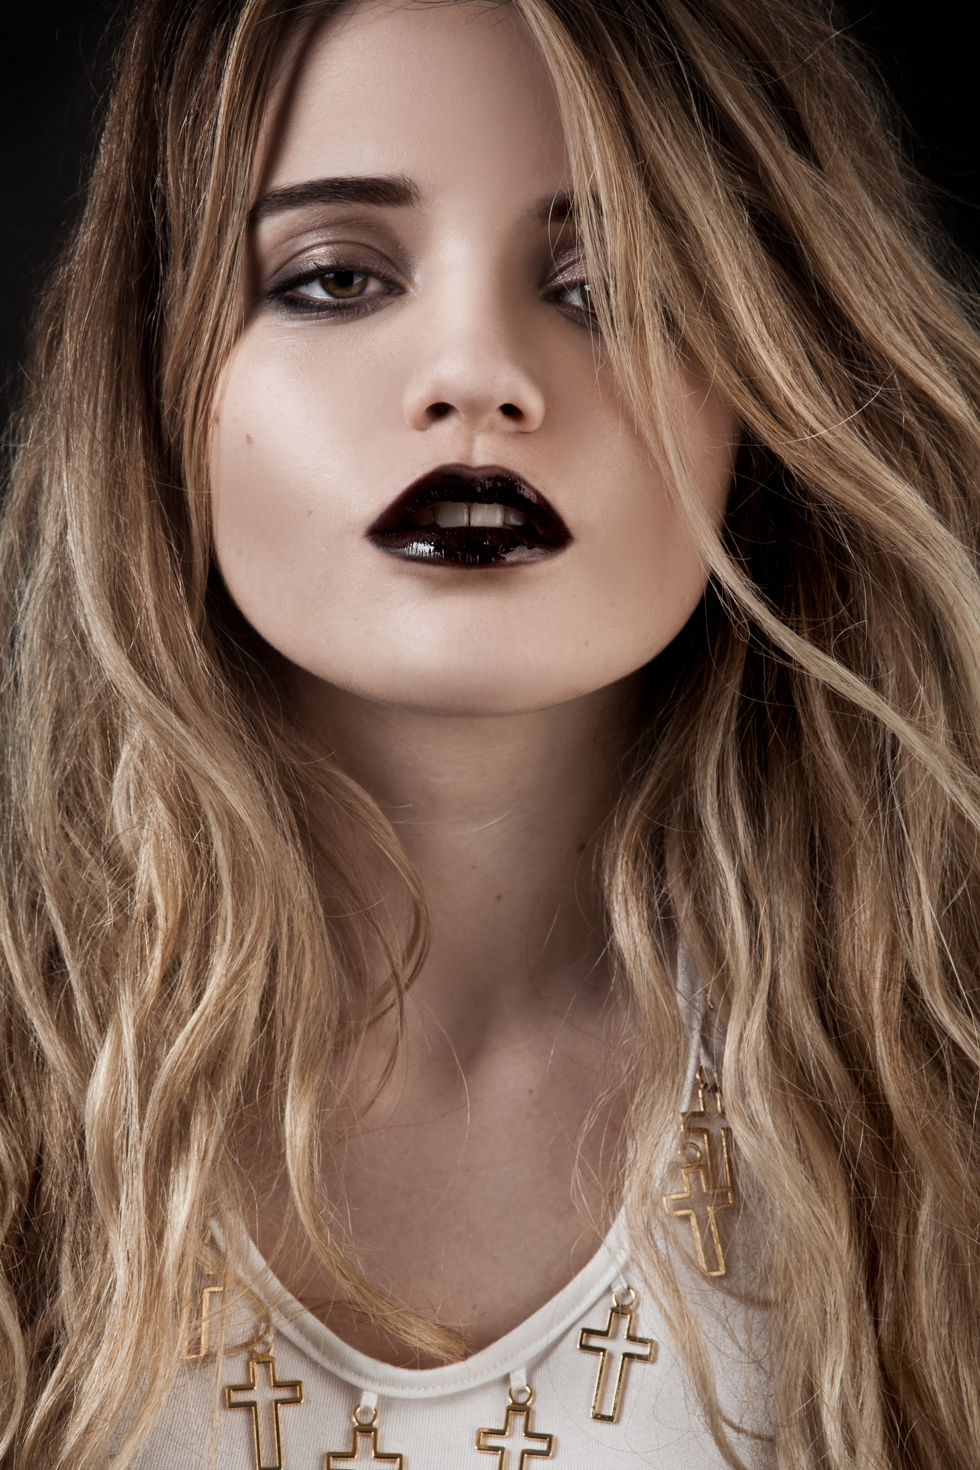 People 980x1470 Sky Ferreira women singer actress blonde women indoors face dark lipstick makeup portrait portrait display